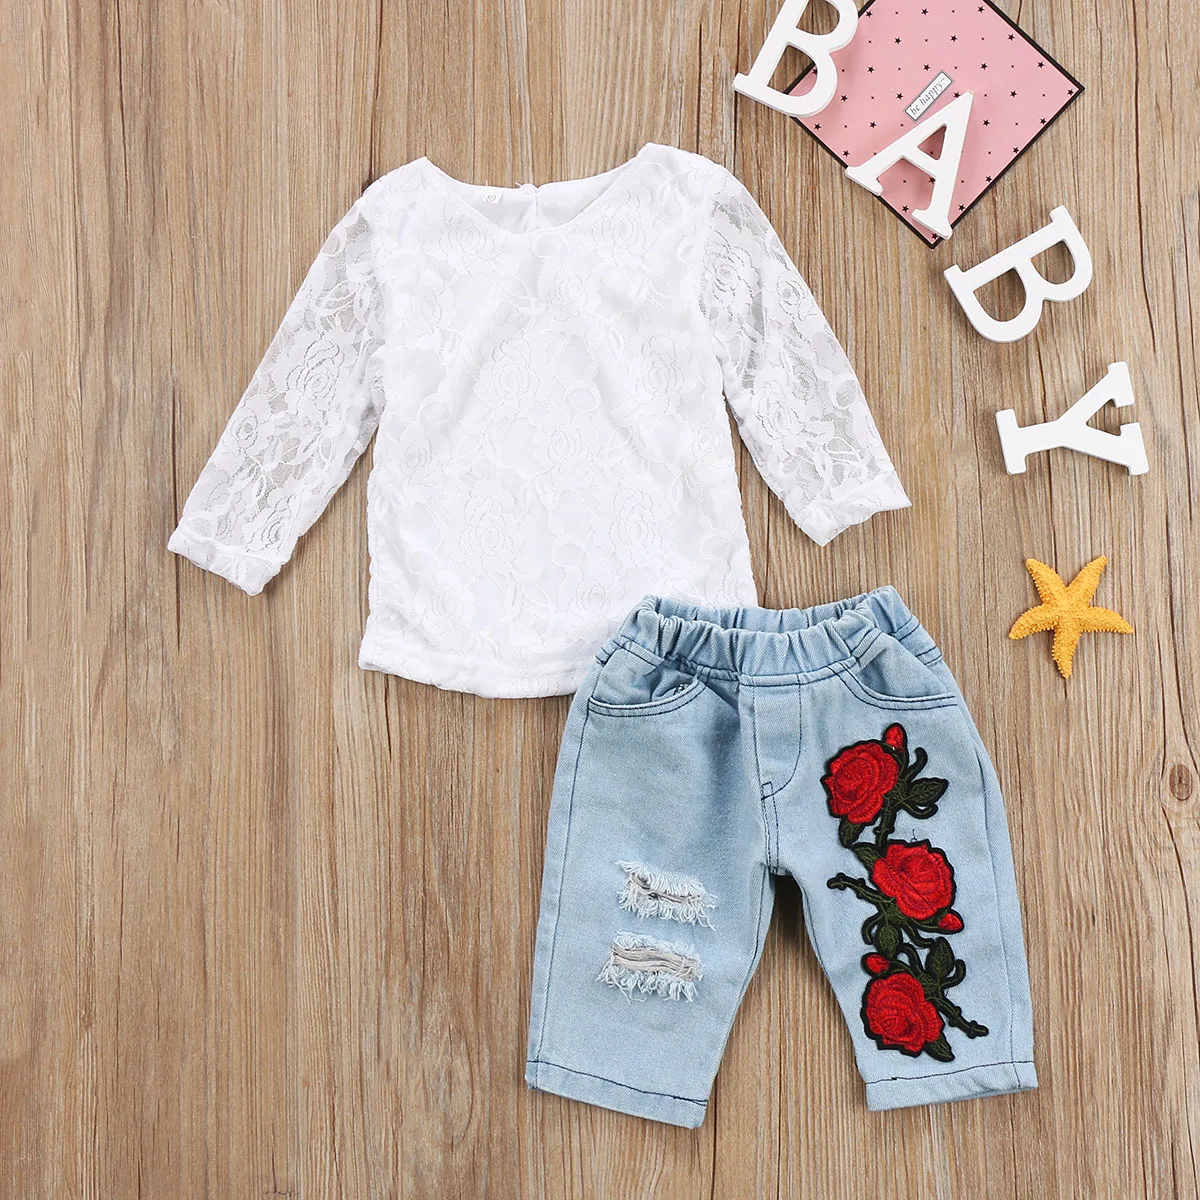 Новейшая мода новорожденных Одежда для детей; малышей; девочек 3D красивый цветок кружева топы крутые джинсовые Короткие шорты комплект